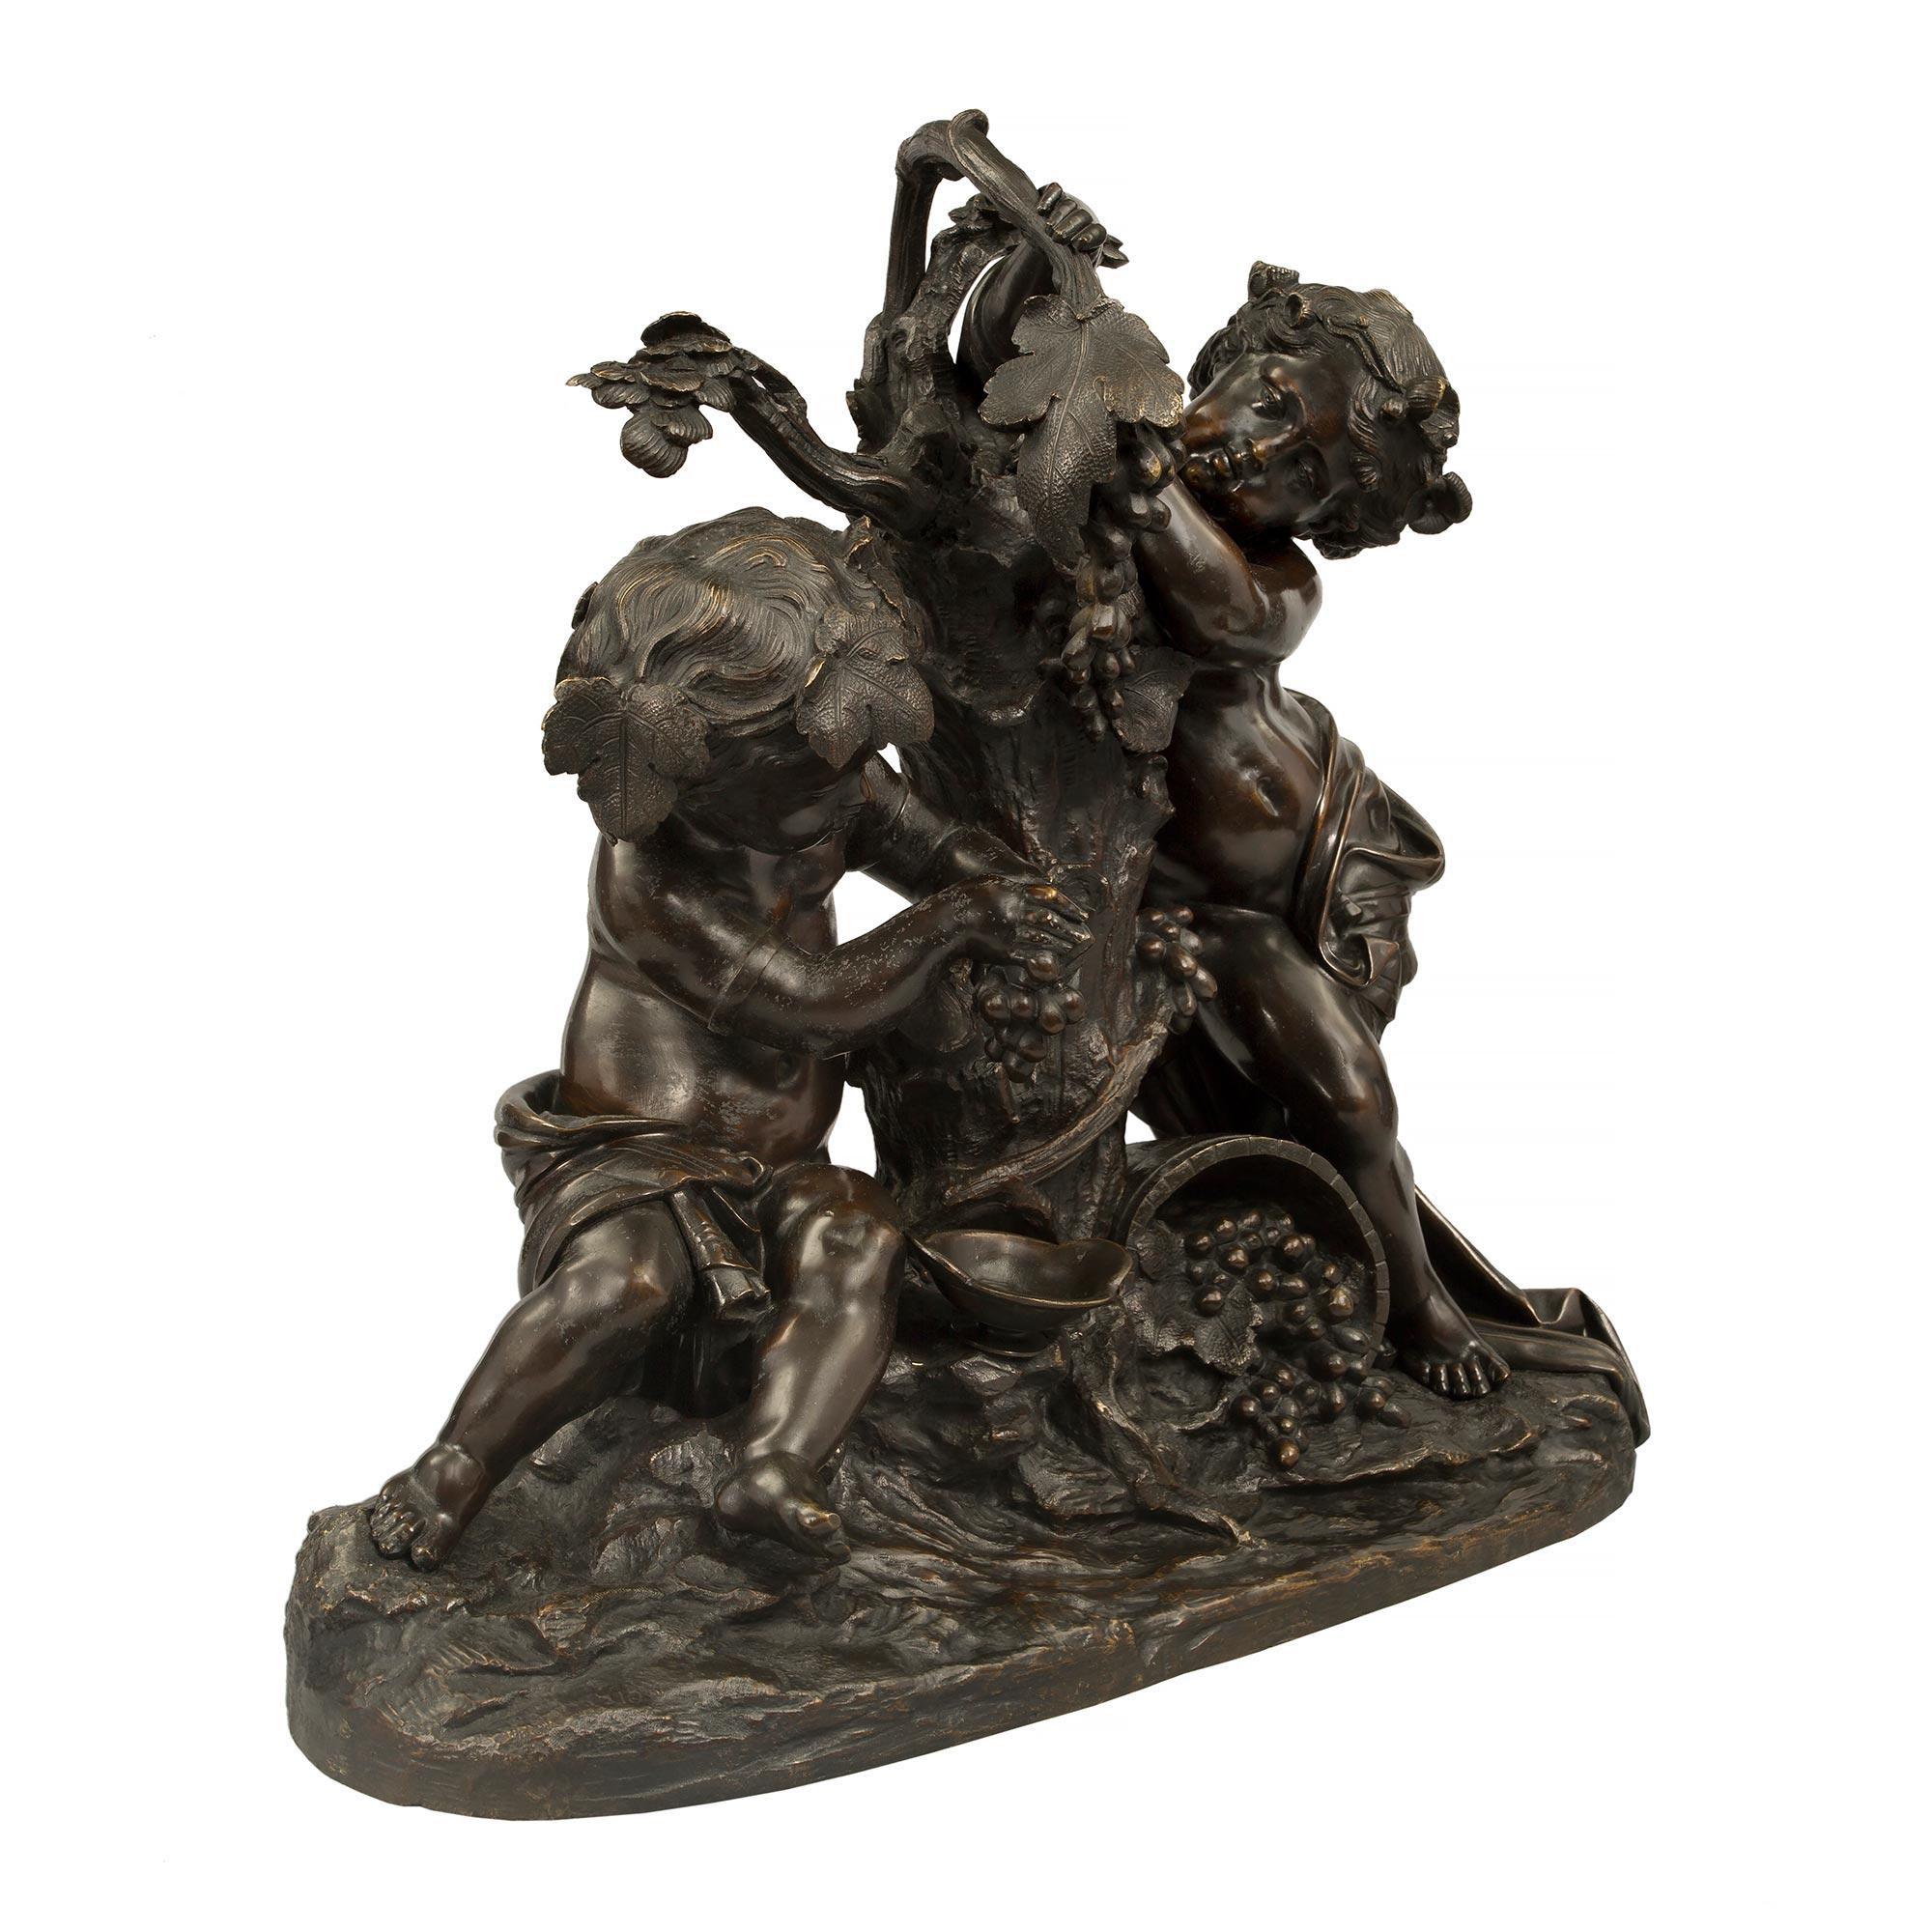 Eine auffallende und qualitativ hochwertige französische Bronzestatue aus dem 19. Jahrhundert im Stil Louis XVI, patiniert, signiert mit Clodion, die zwei Putten beim Weinmachen darstellt. Die Statue steht auf einem länglich geformten Sockel mit